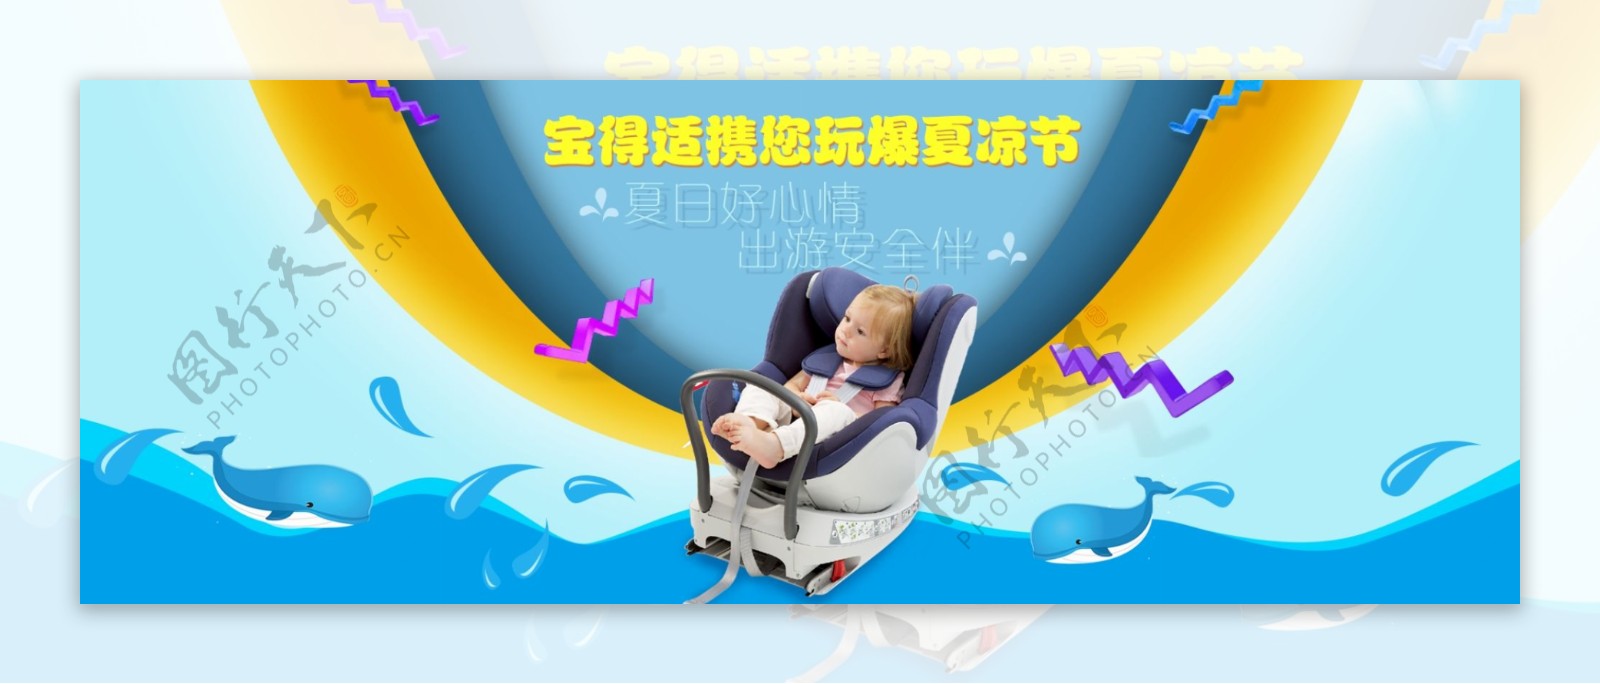 婴儿安全车椅夏凉节促销